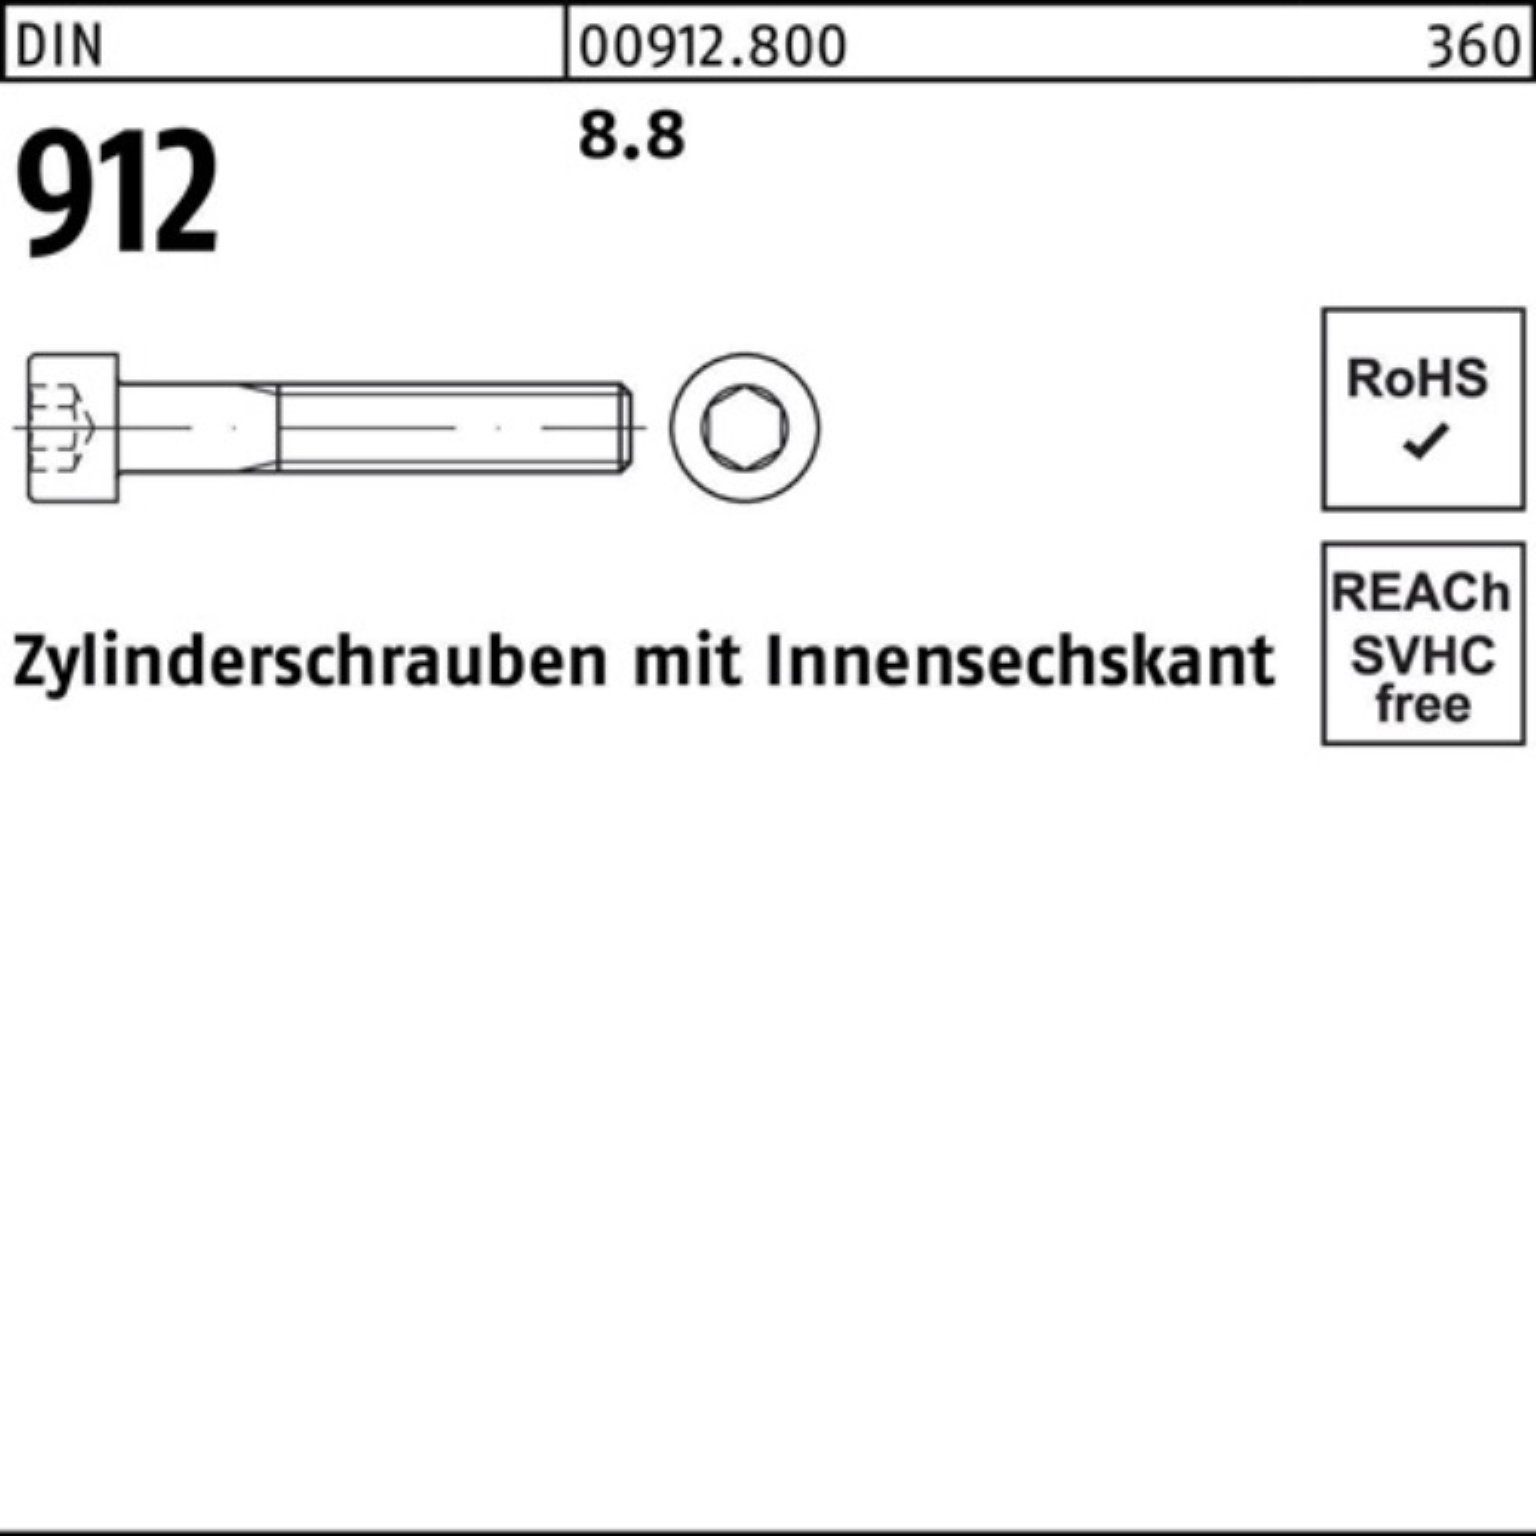 M4x DI Reyher DIN Innen-6kt Zylinderschraube 912 Stück 20 Pack 100er 8.8 Zylinderschraube 100